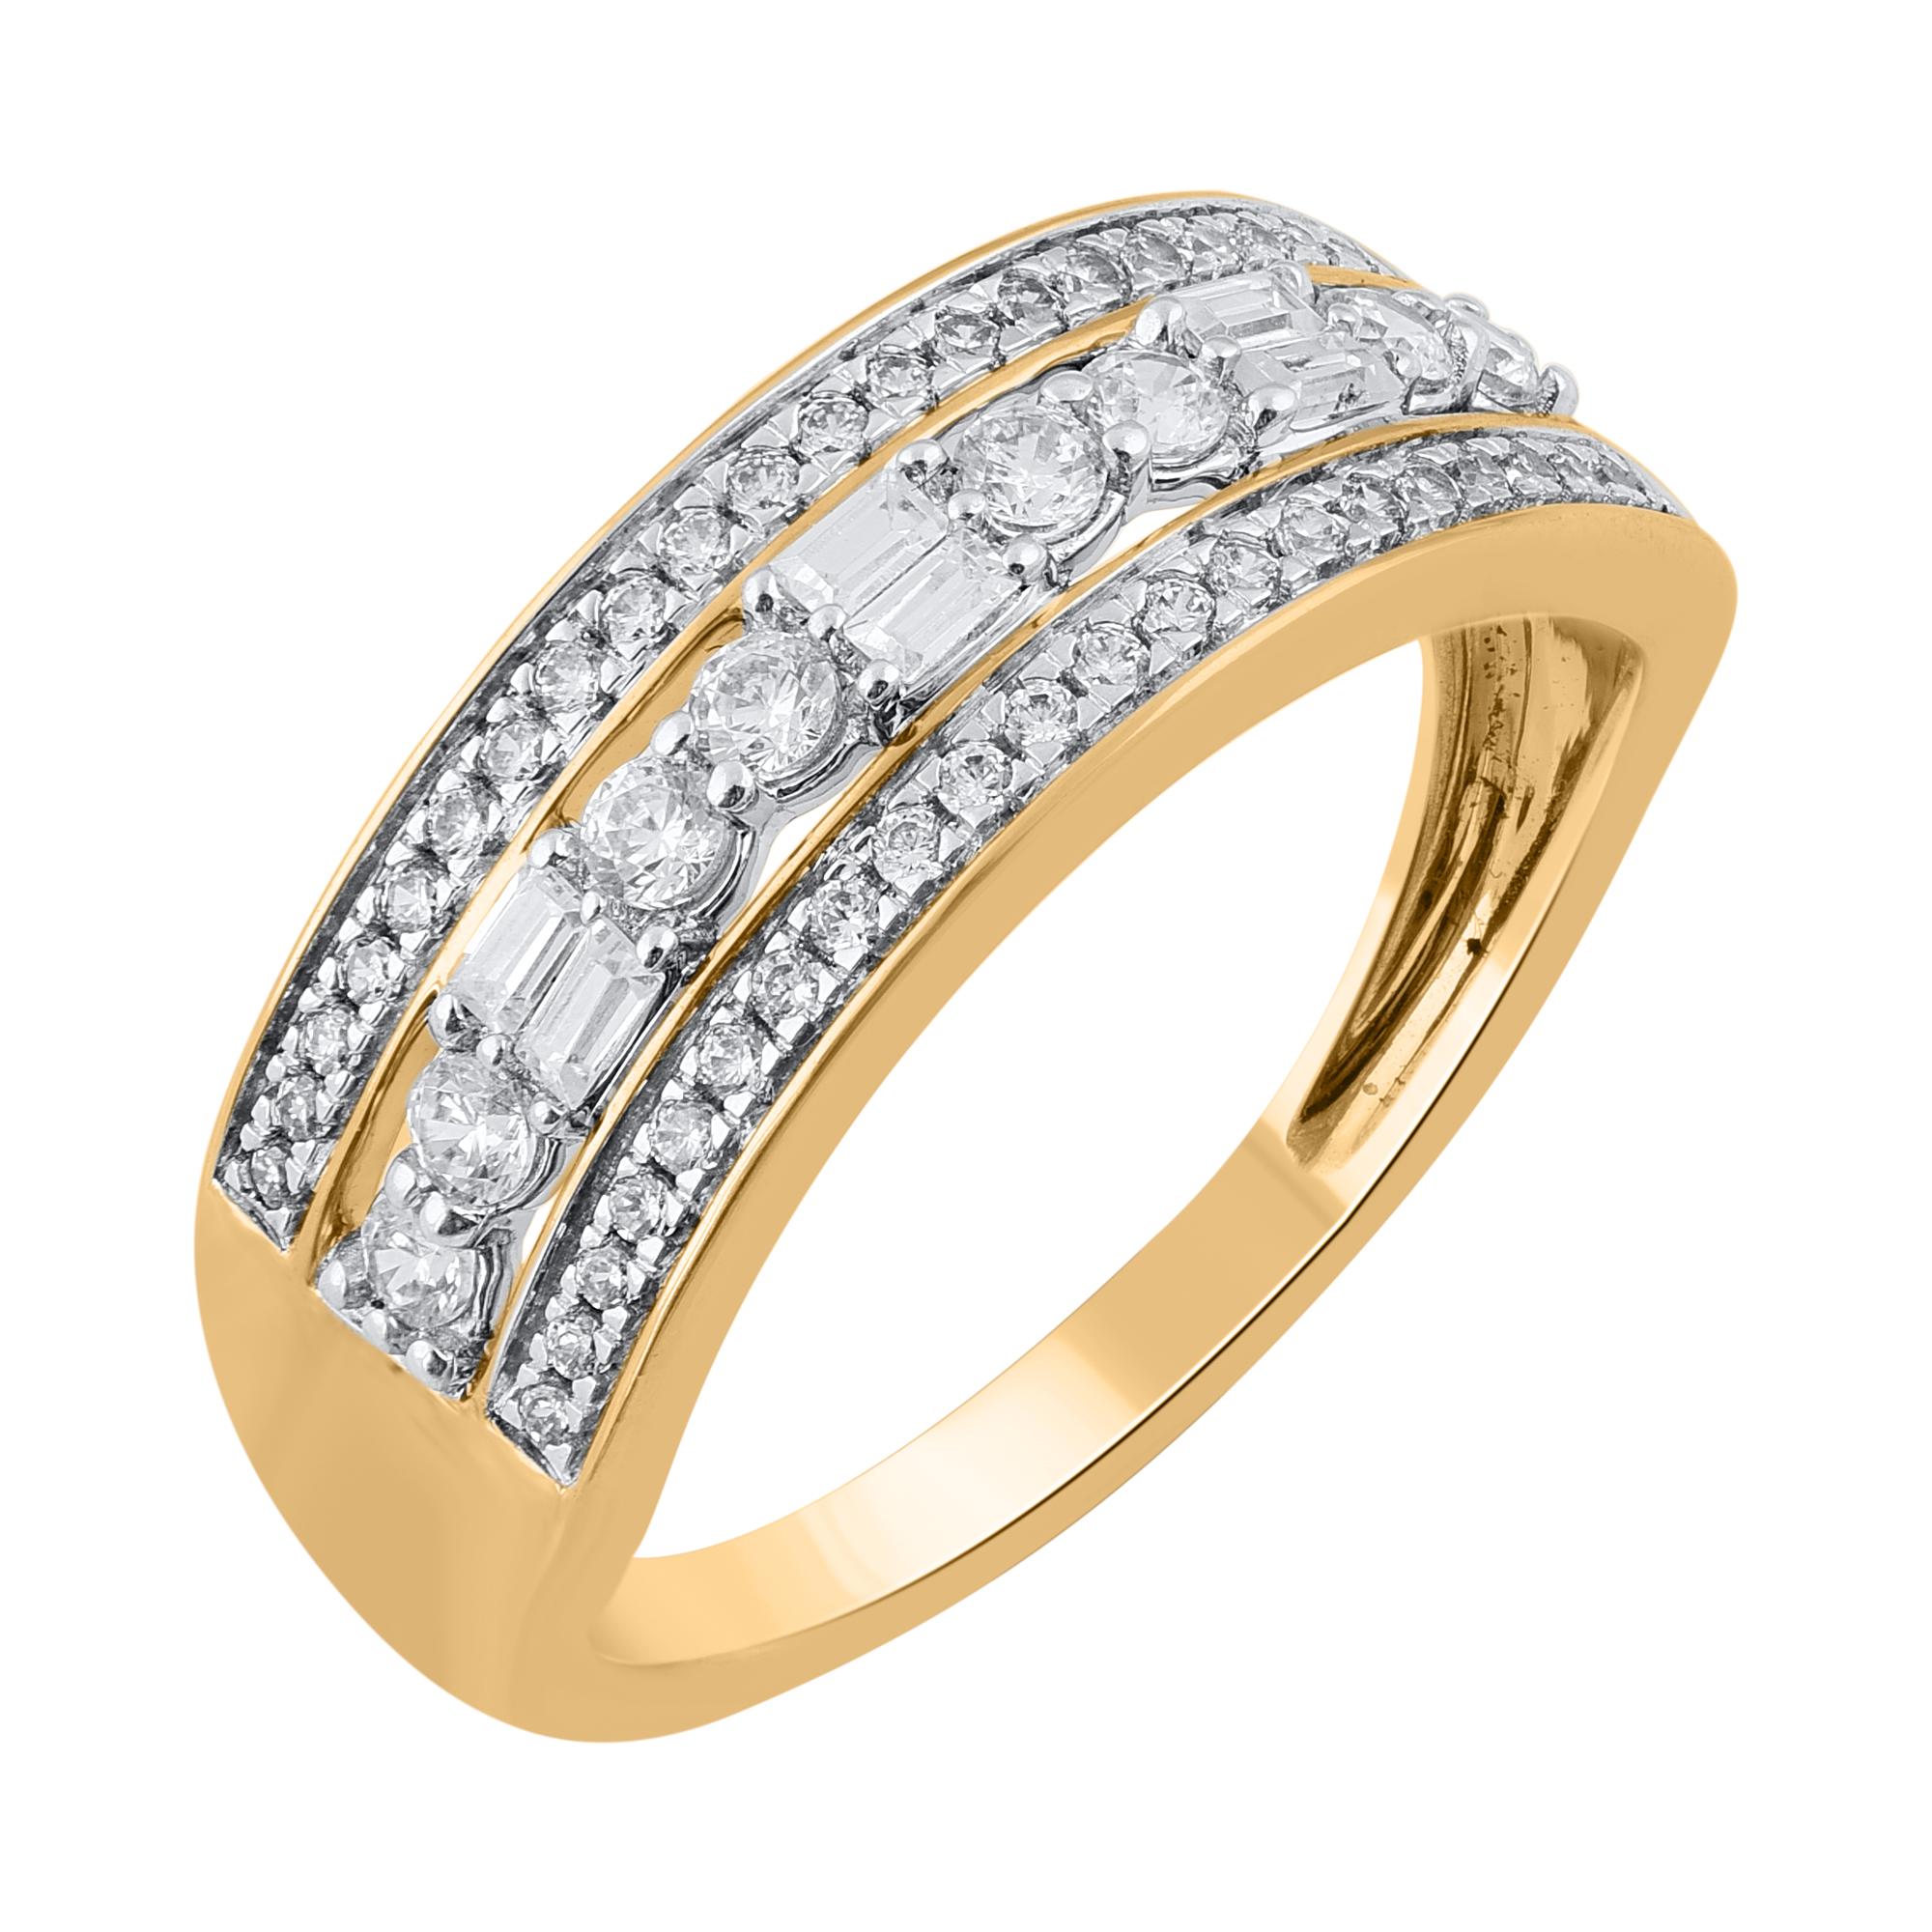 Dieser schillernde und klassische Diamantring ist alles andere als gewöhnlich. Diese Band Ring sind mit 56 Brillant Cut, Single Cut & Baguette natürlichen Diamanten in 18KT Gelbgold in Pave und Zackenfassung besetzt. Die weißen Diamanten sind mit